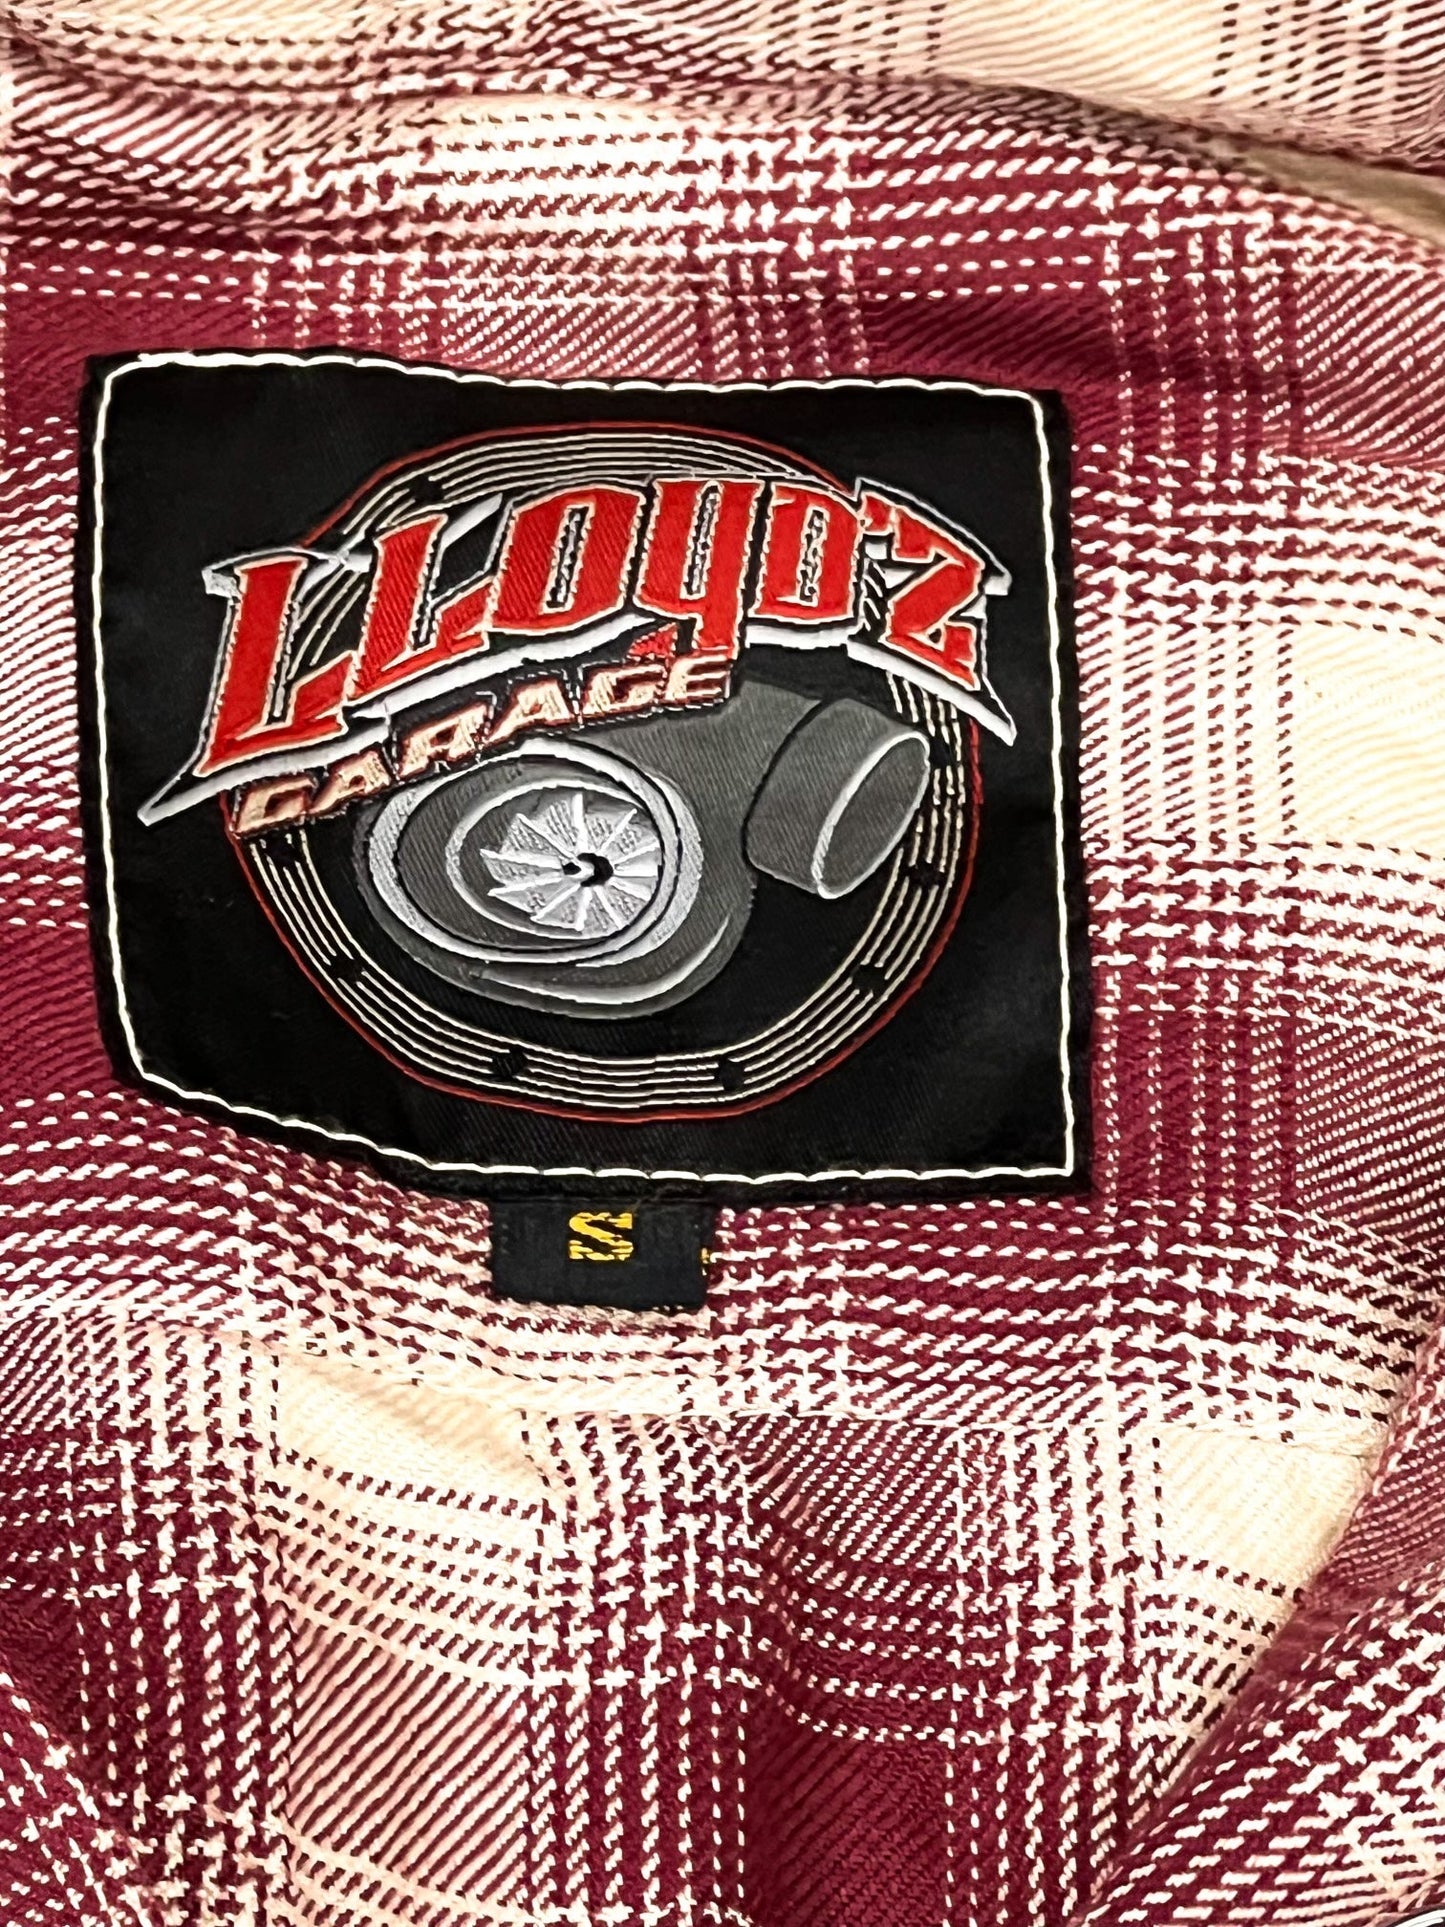 Lloyd'z Garage Flannel, Red/Cream- Women's